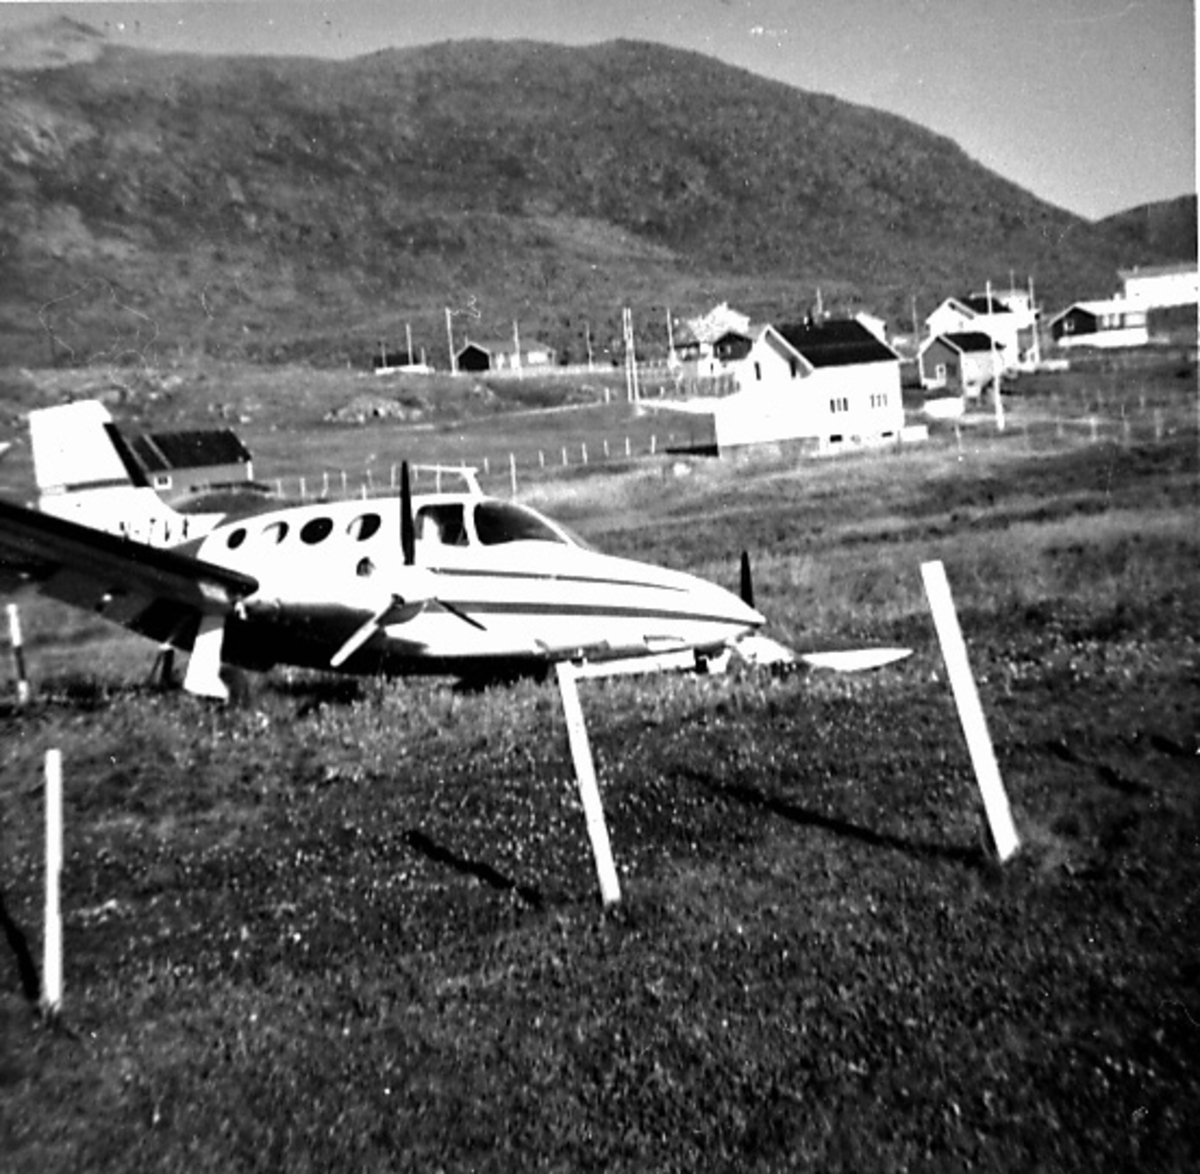 Fly, Cessna 401A, LN-TVX. Skrått forfra. "Ligger" ute på et jorde. Ene vingen nede i bakken. Bygninger bak.